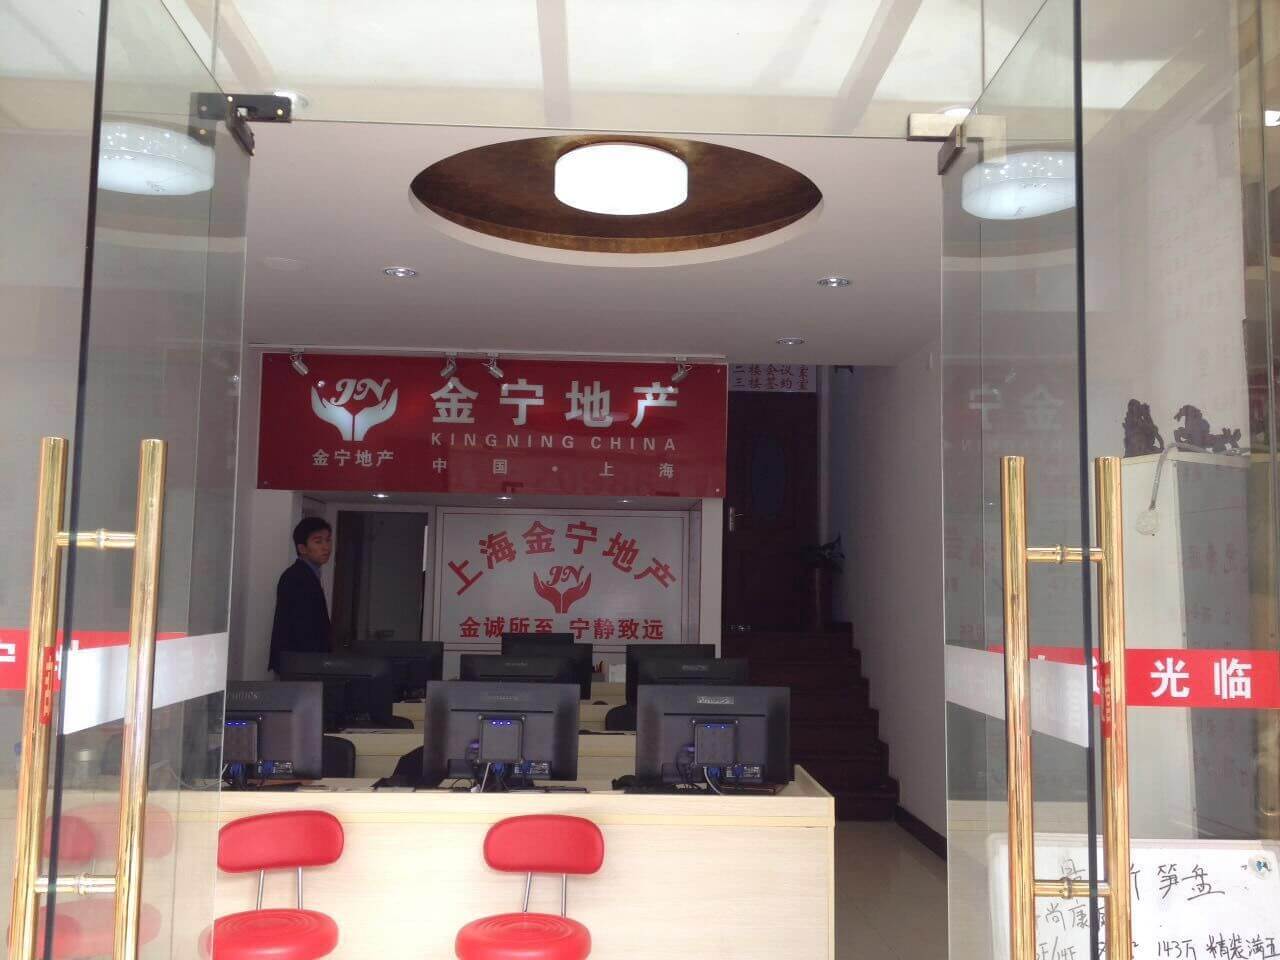 上海金宁房地产经纪事务所门店展示-上海炫园企业登记代理有限公司